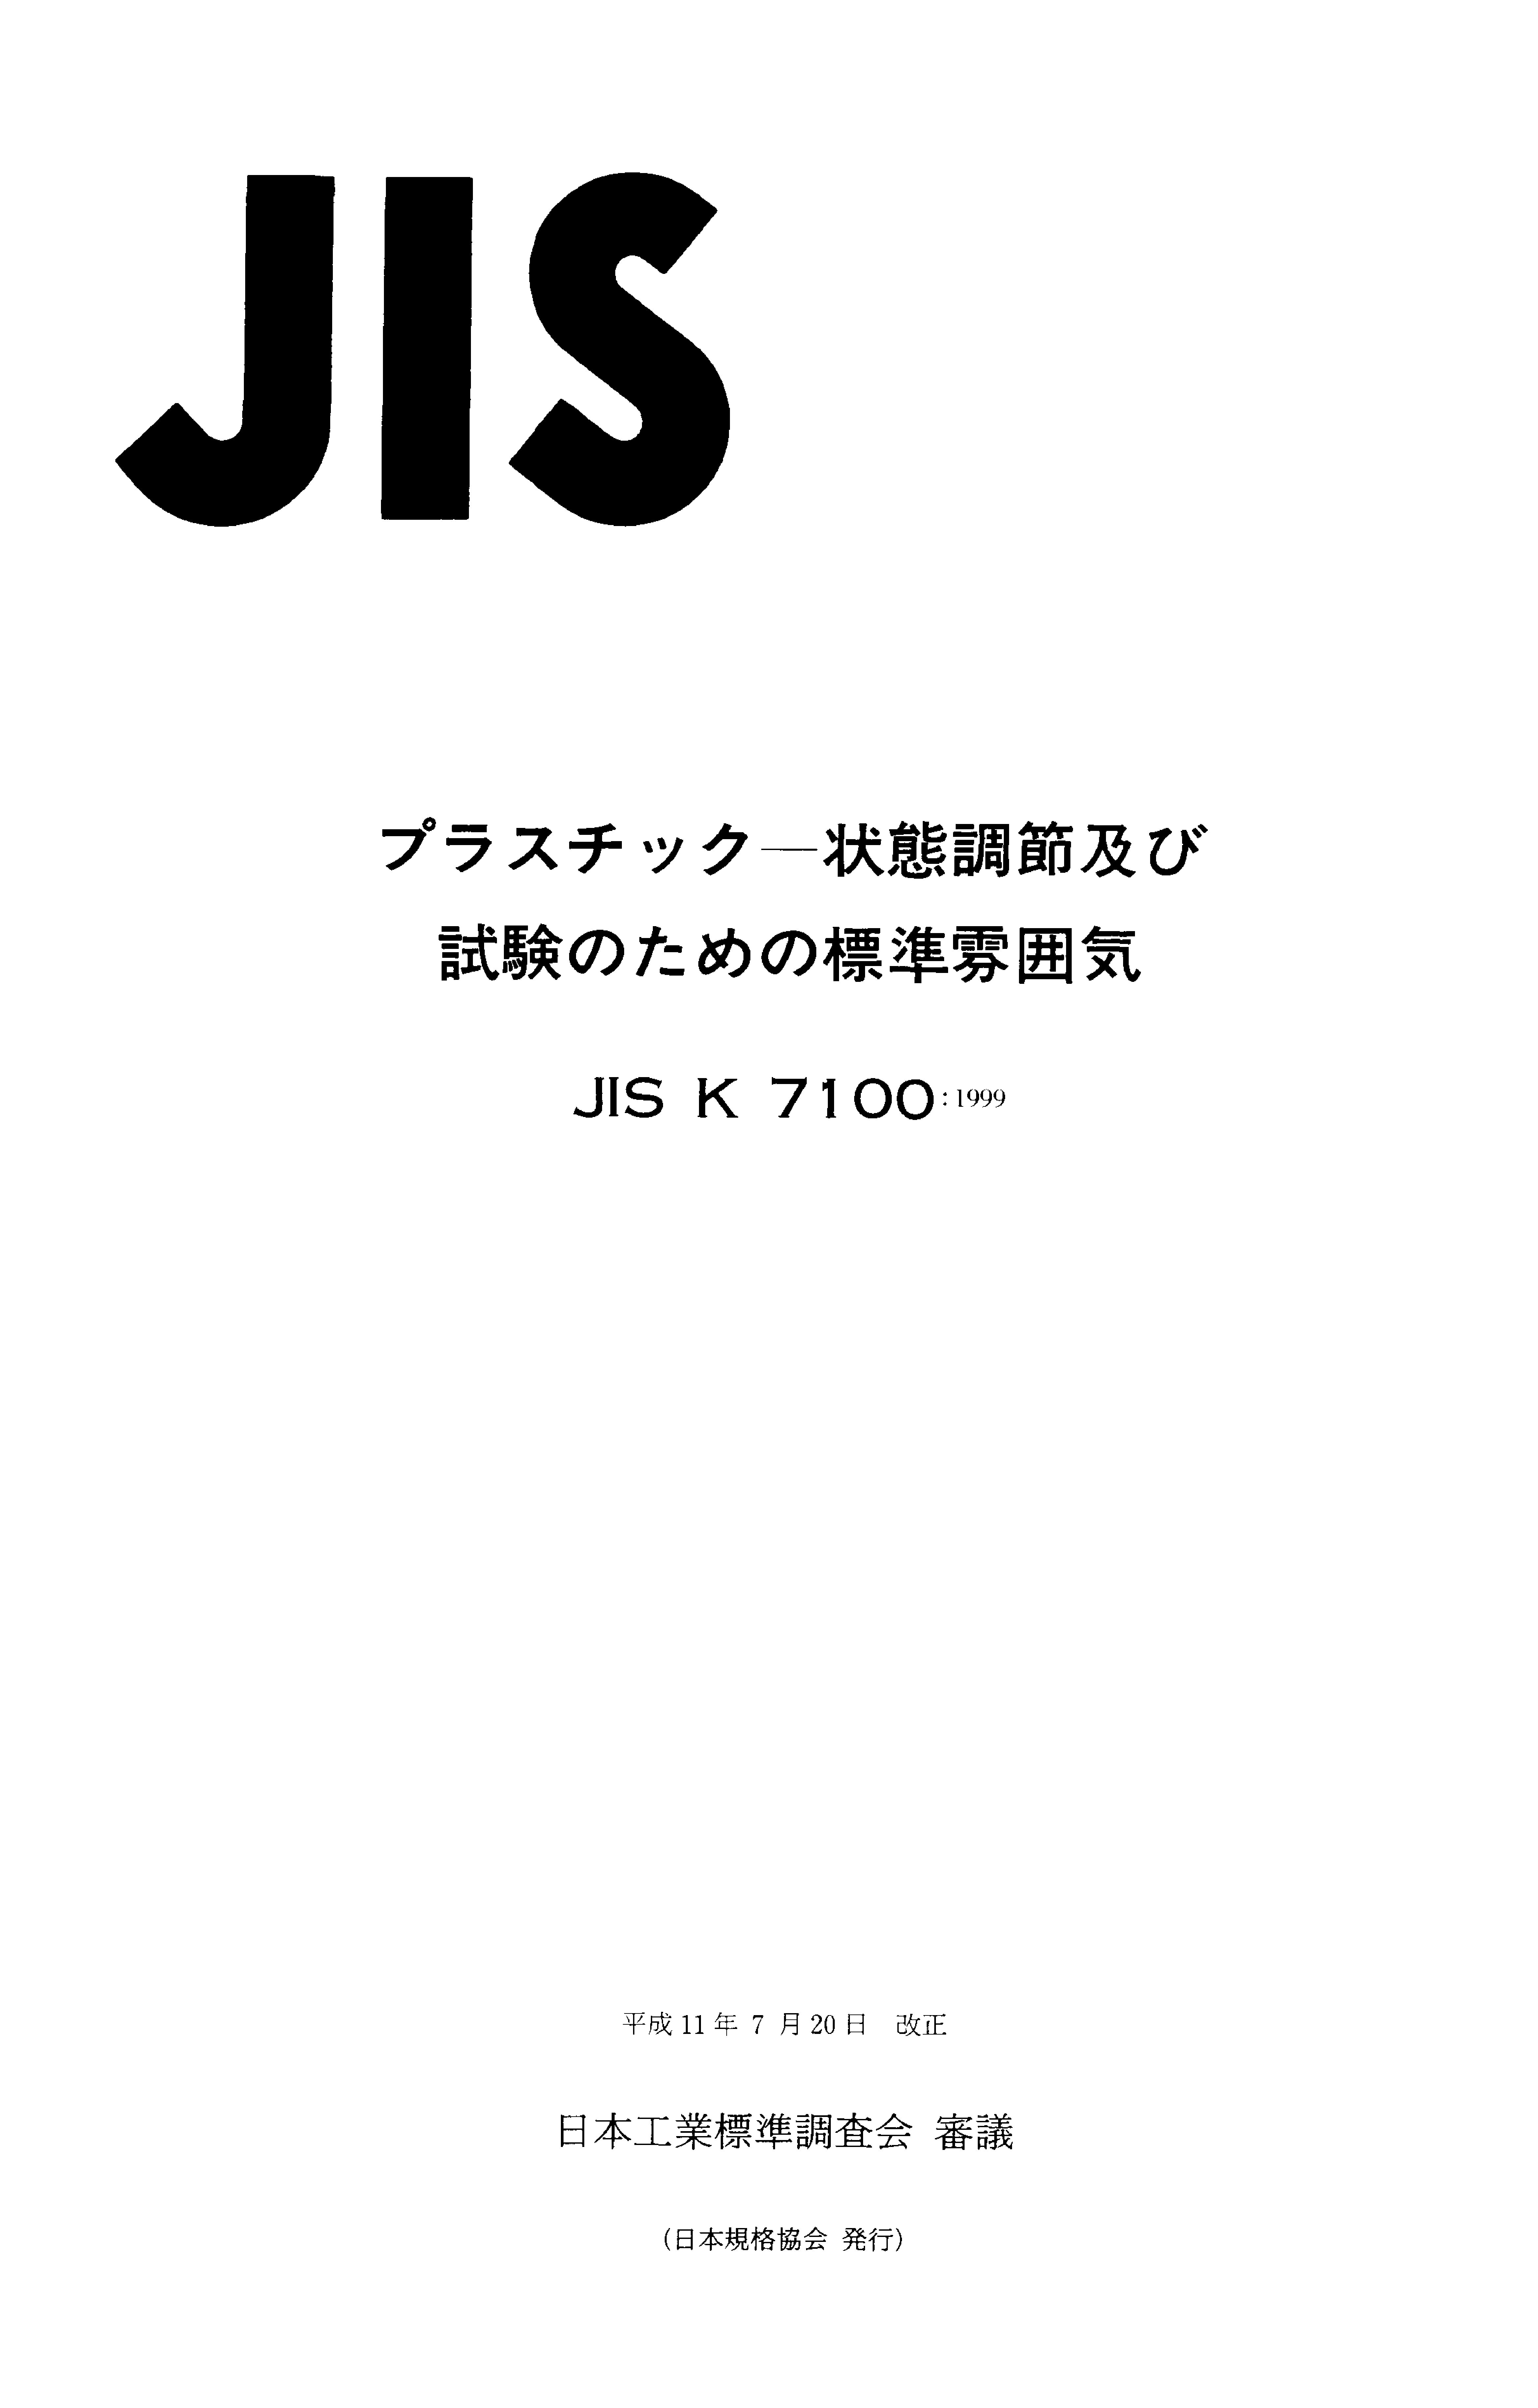 JIS K 7100:1999封面图